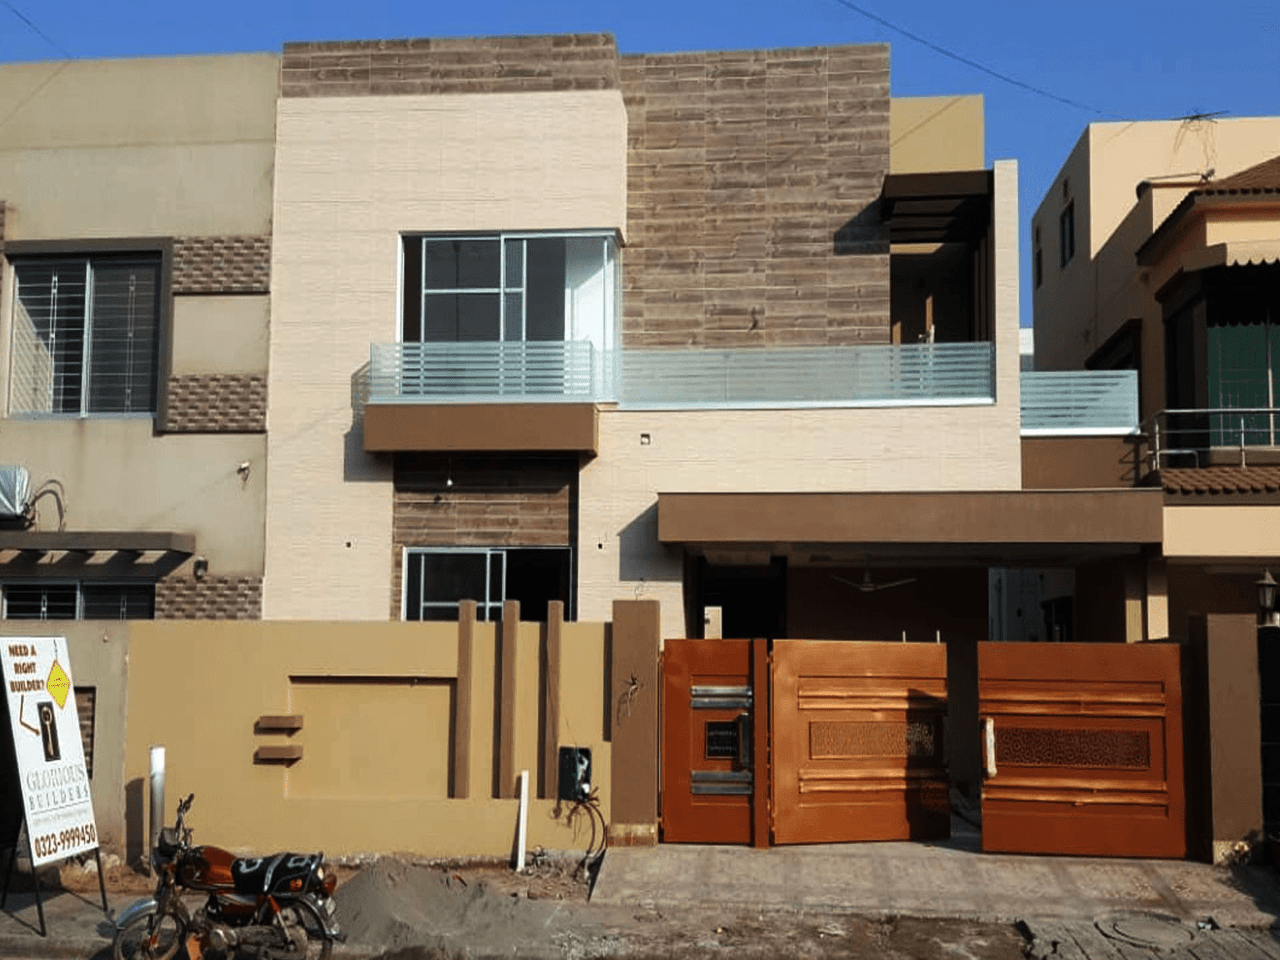 11 MARLA – SHANDAAR HOMES GULBAHAR – BAHRIA TOWN LAHORE